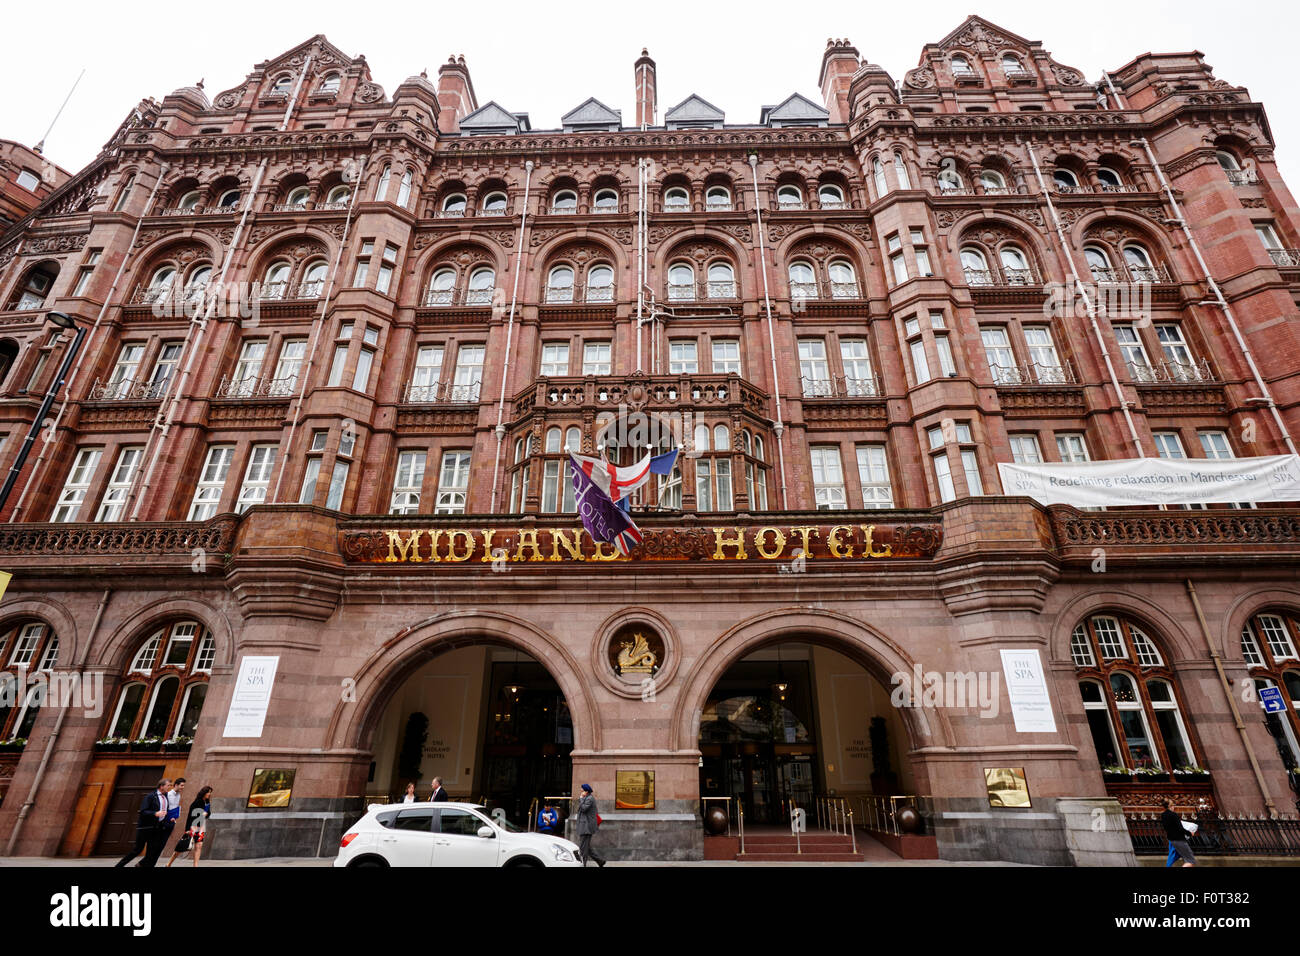 Manchester midland hotel England UK Stock Photo